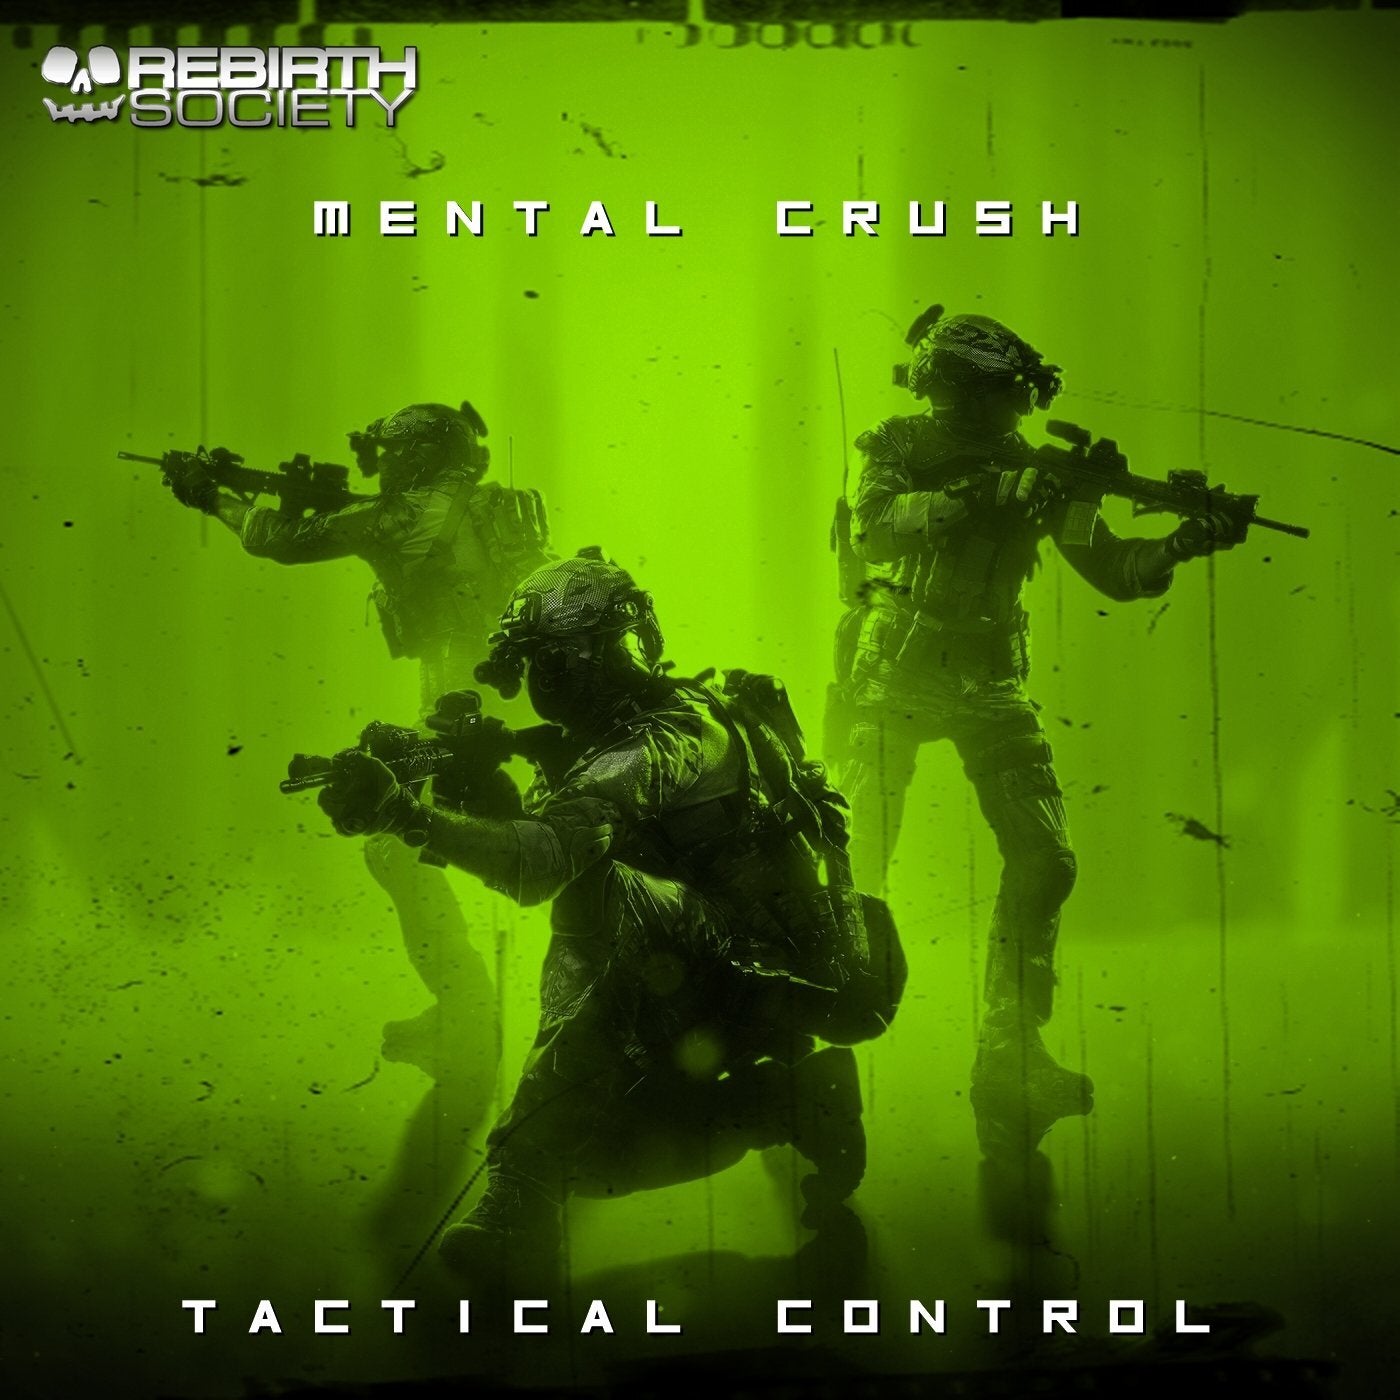 Tactical Control